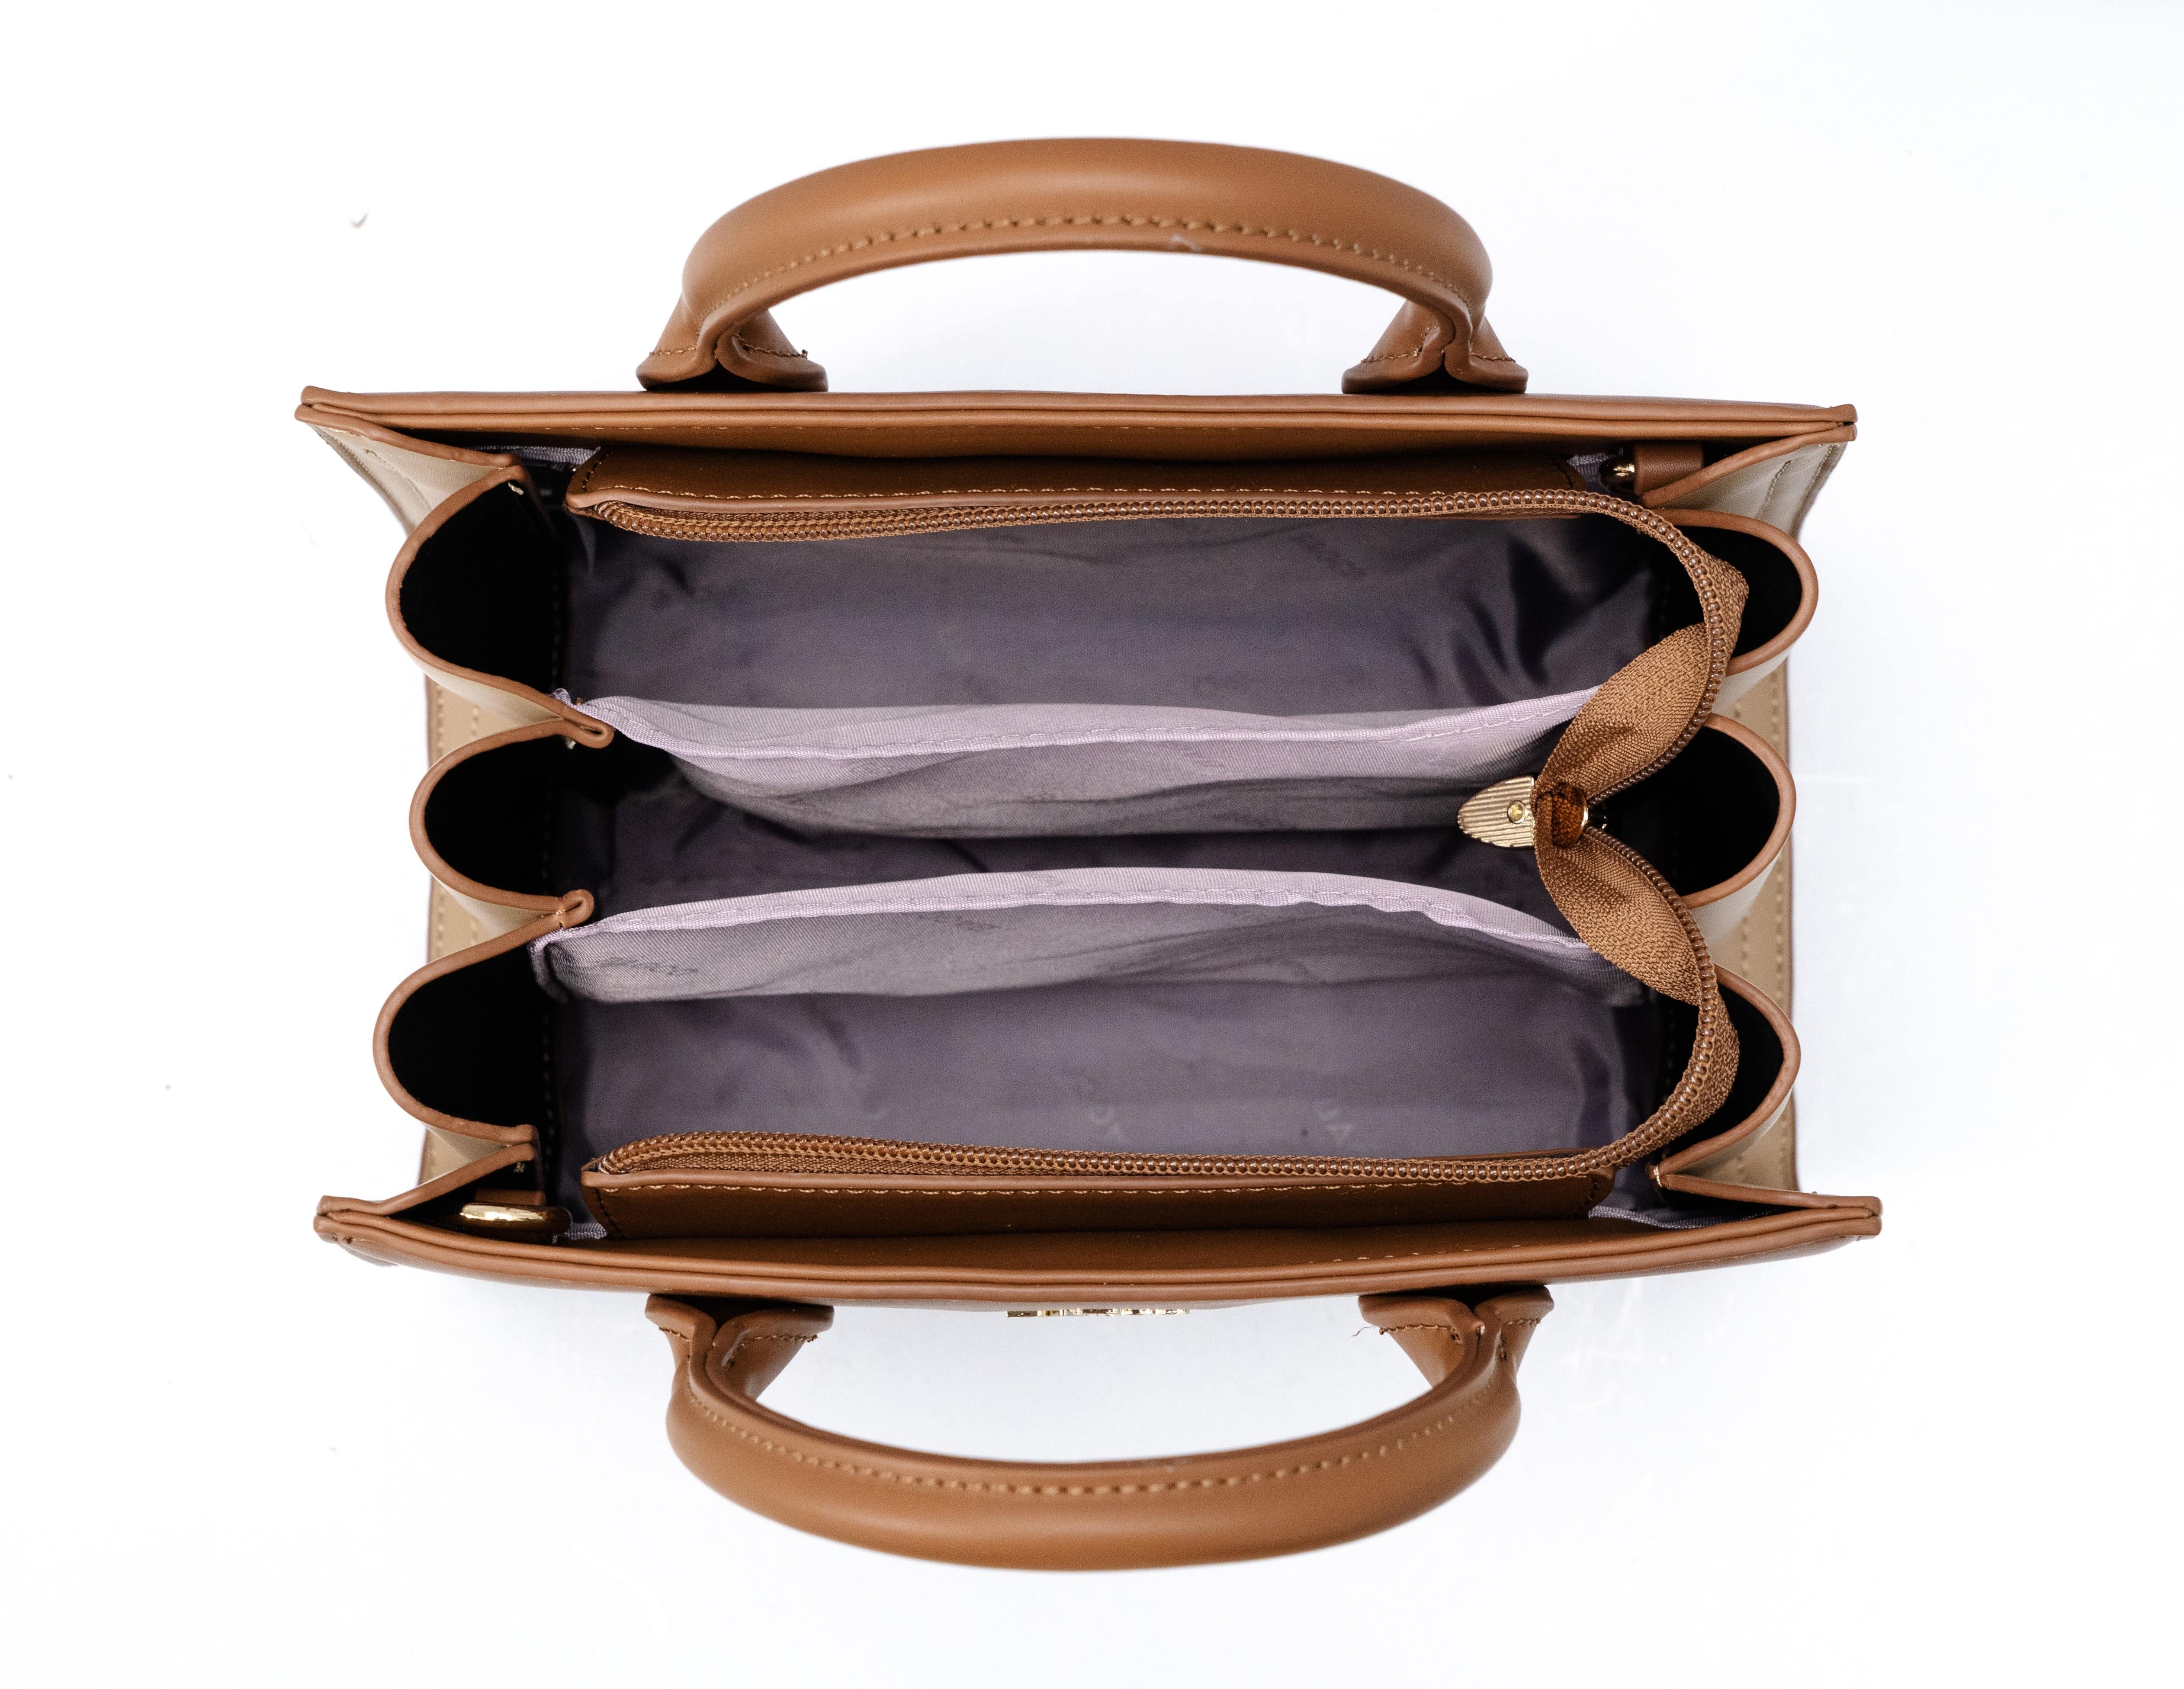 حقيبة يد نسائية باللون الاسود مربعة الشكل بحجم كبير ومساحة داخلية كبيرة. - KSA